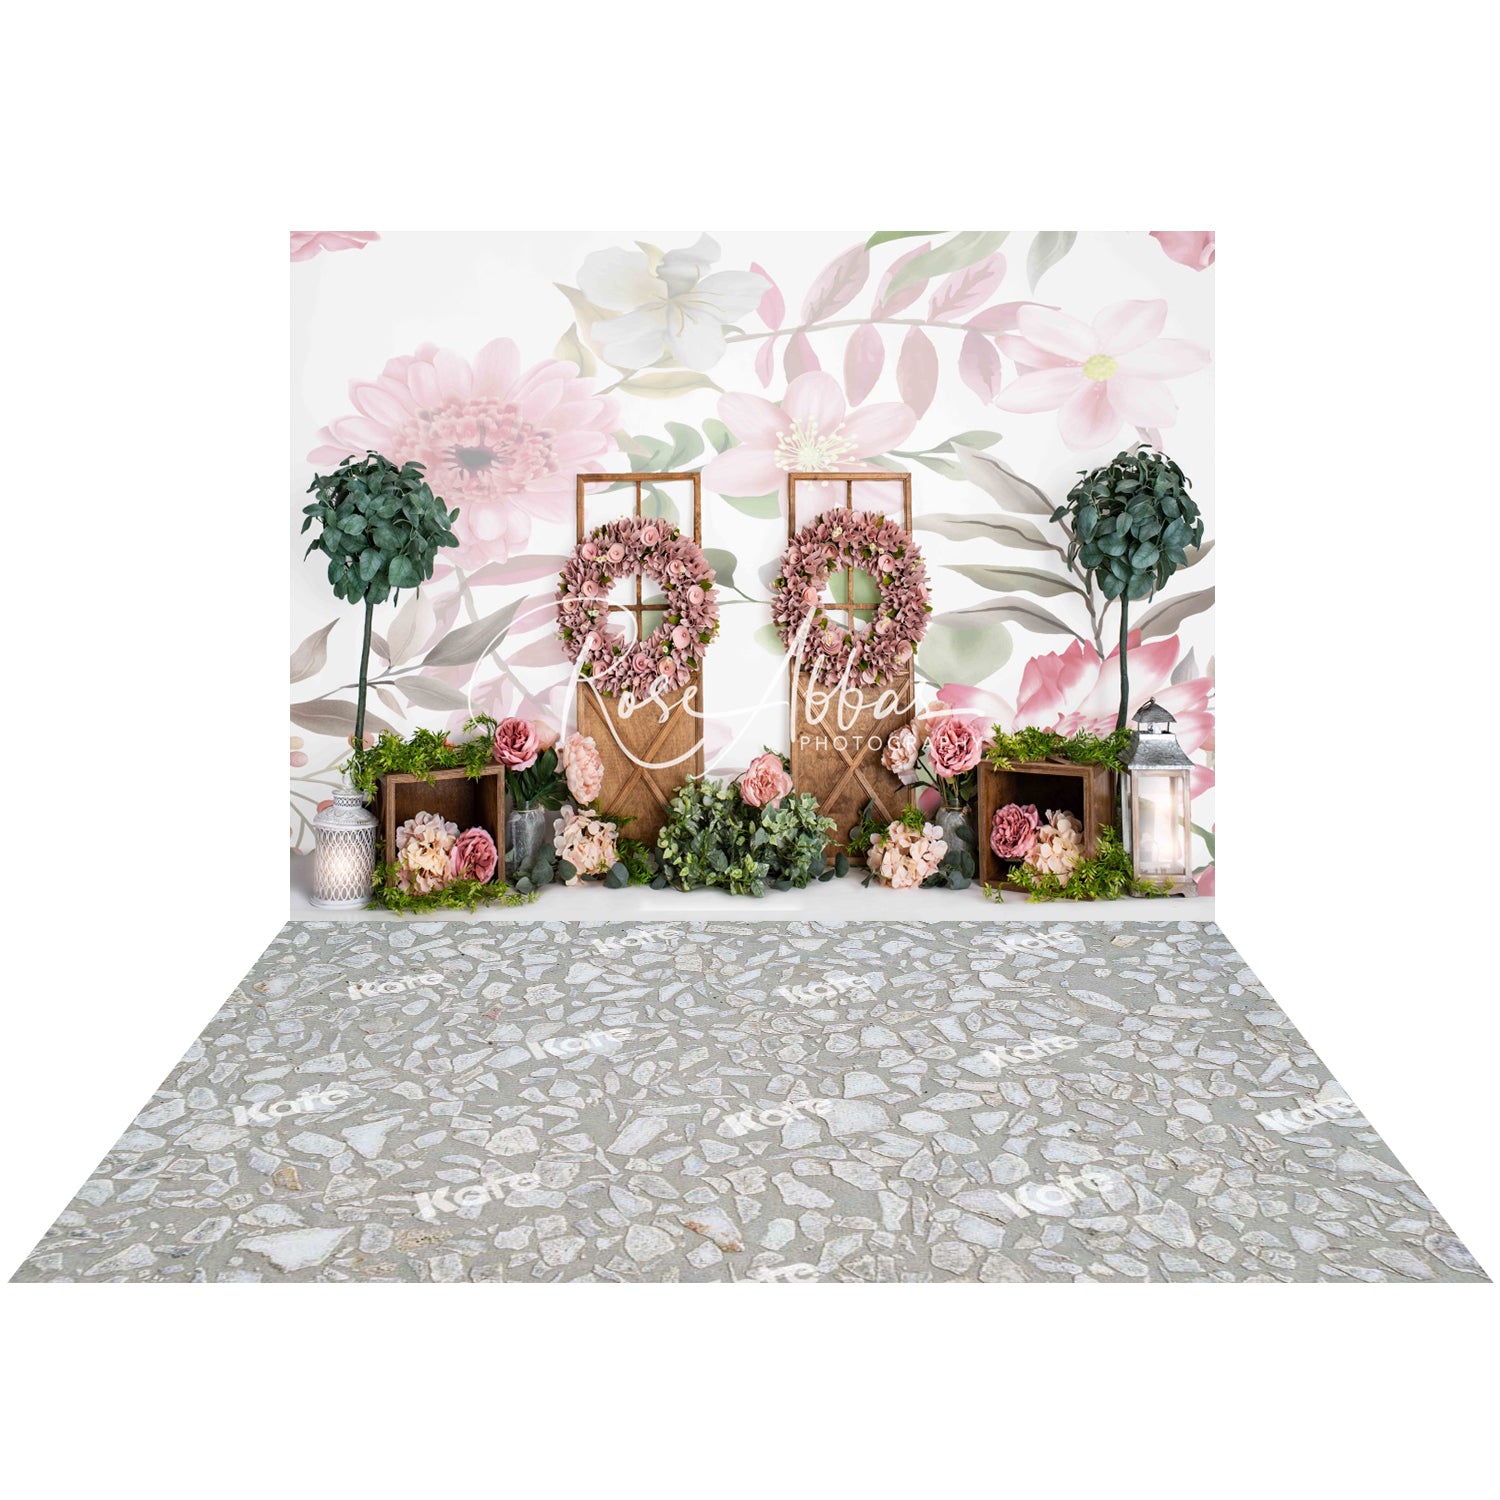 Kate 7x5ft Spring Park Flowers Wreath Cake Smash Backdrop+Kate 5x4ft Gravel Tiling Wood Rubber Floor Mat